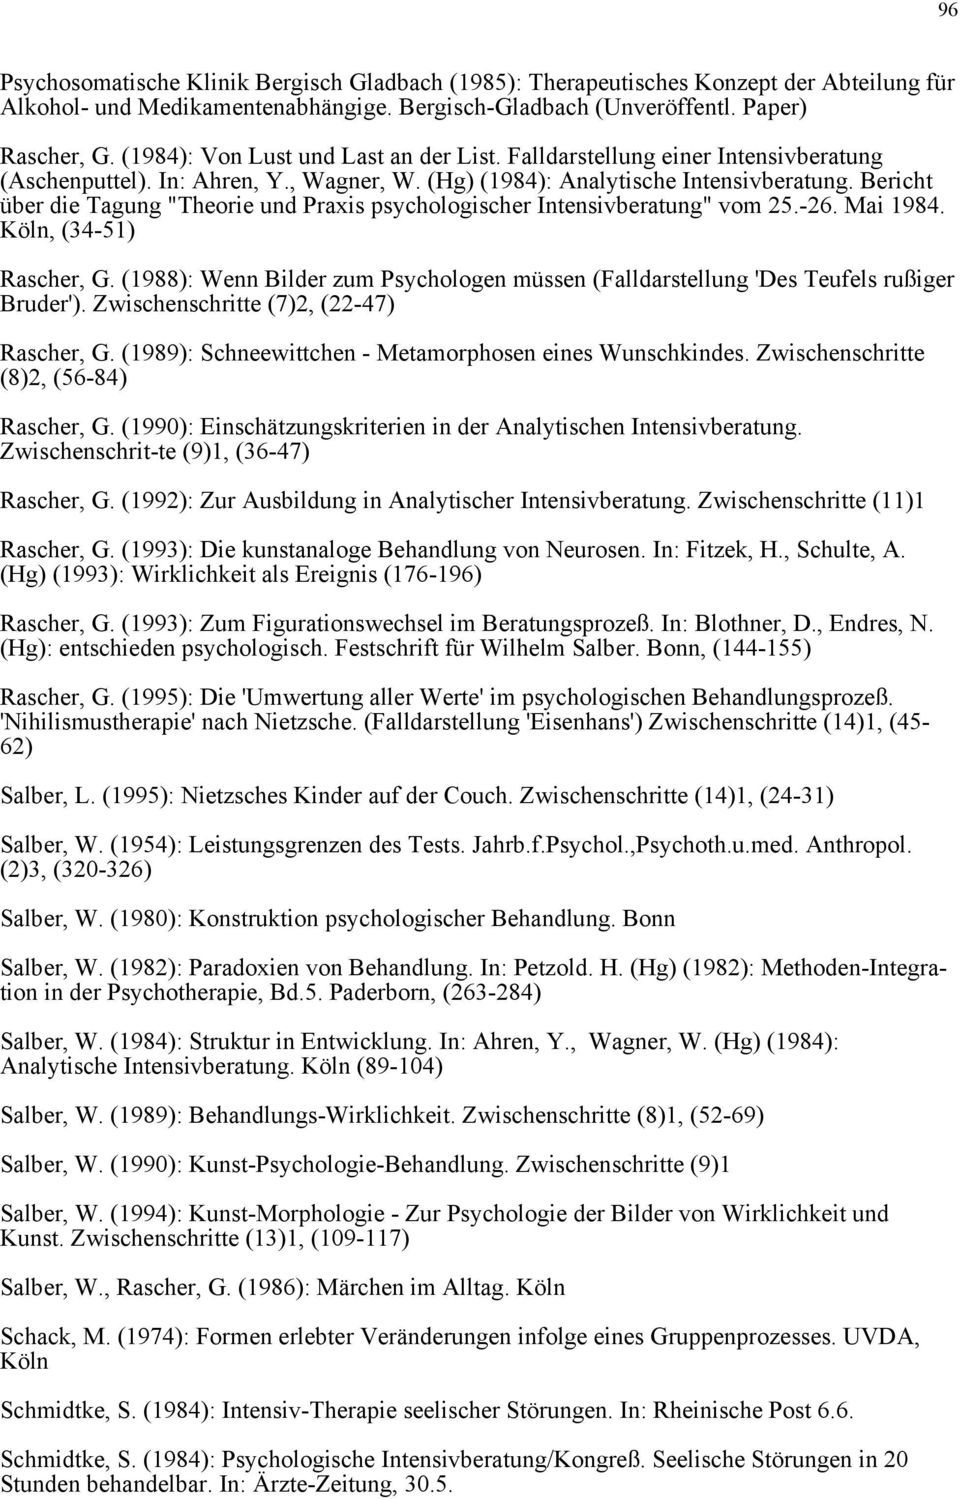 Bericht über die Tagung "Theorie und Praxis psychologischer Intensivberatung" vom 25.-26. Mai 1984. Köln, (34-51) Rascher, G.